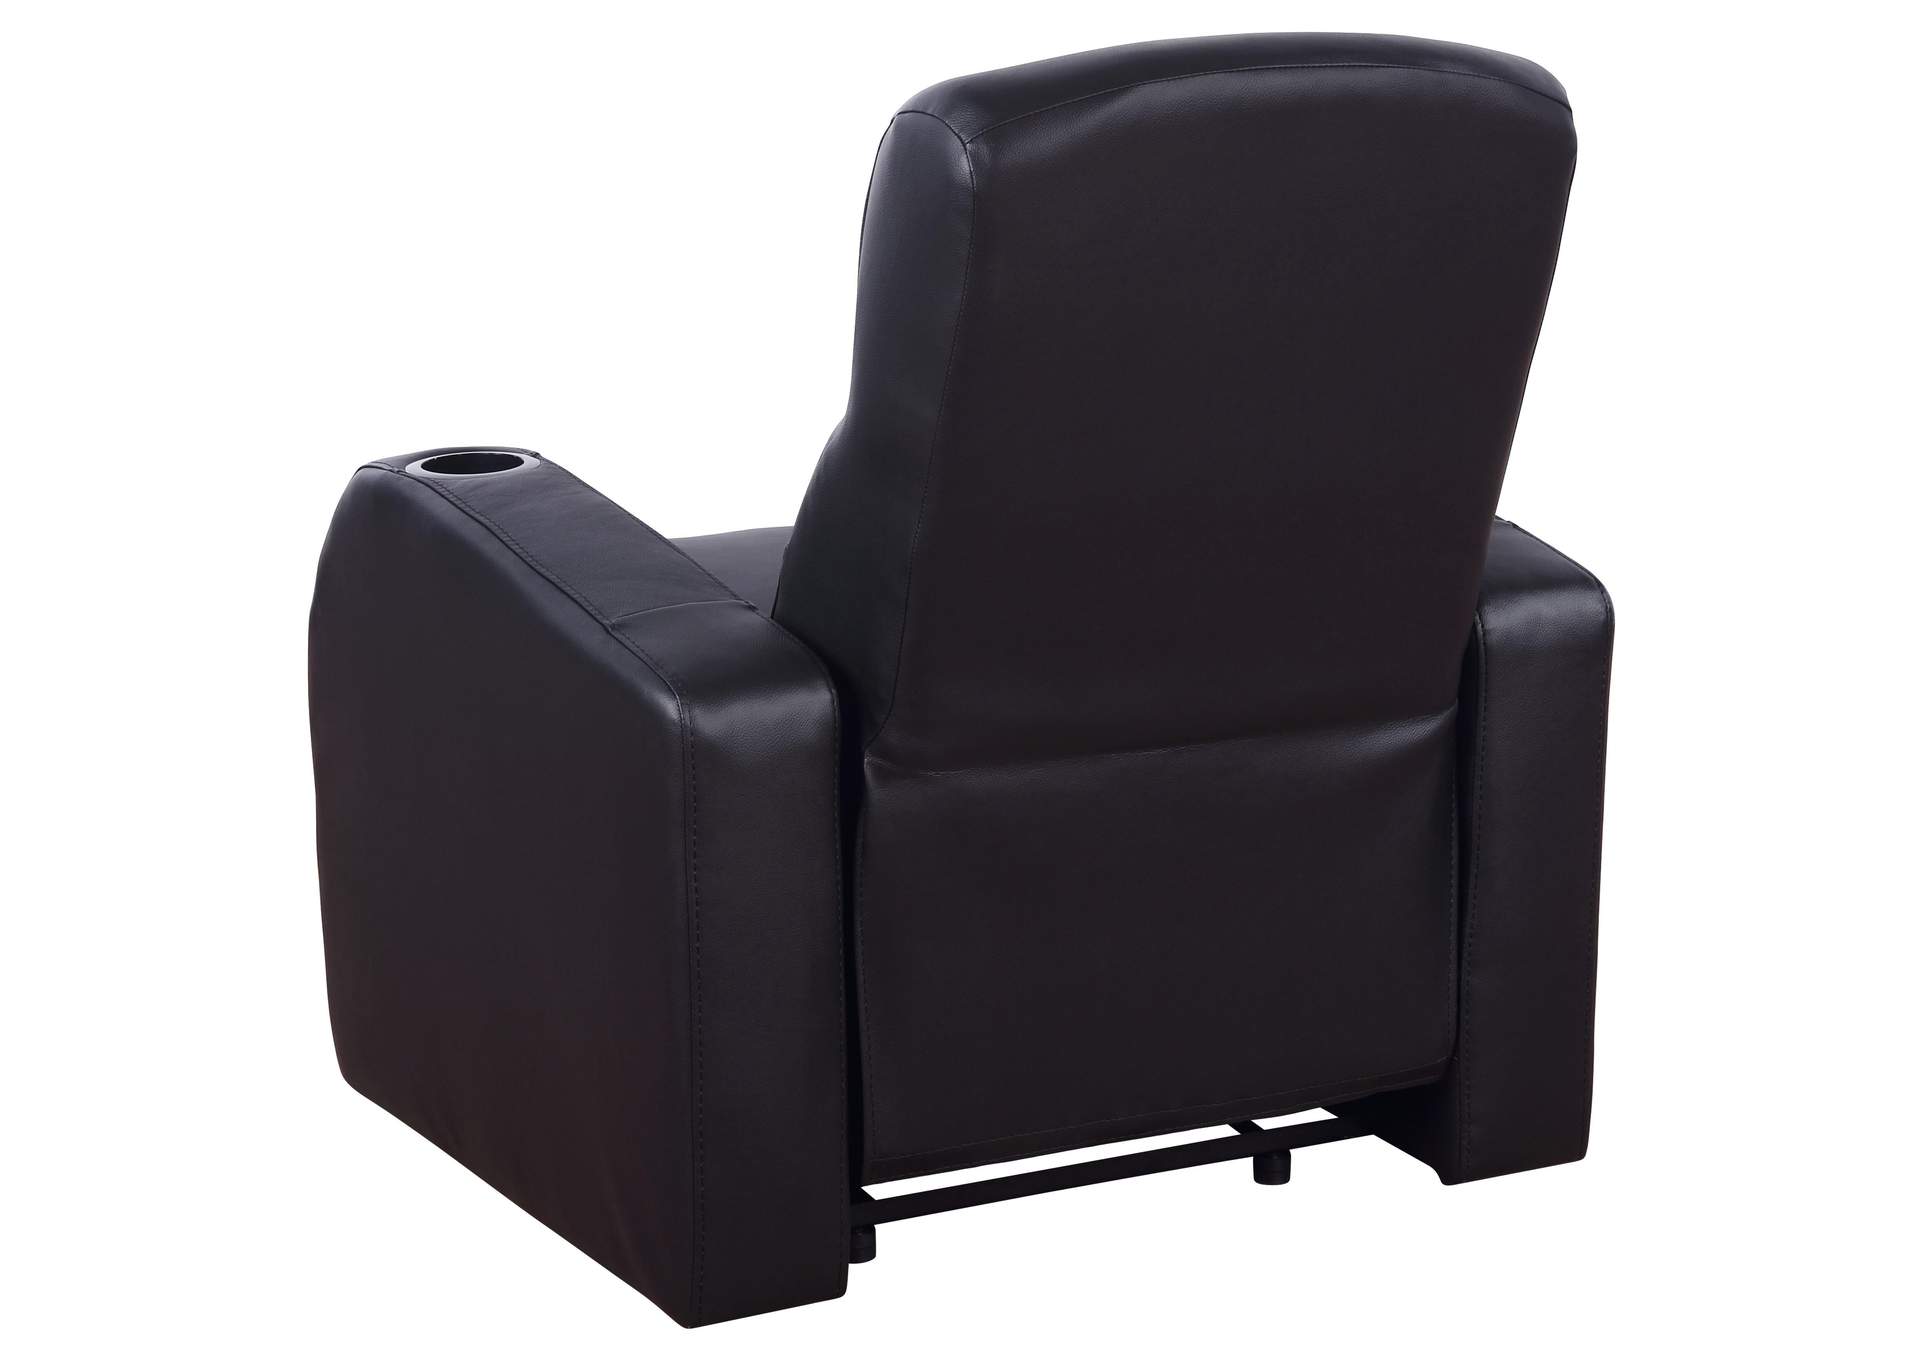 Cyrus Upholstered Recliner Living Room Set Black,Coaster Furniture